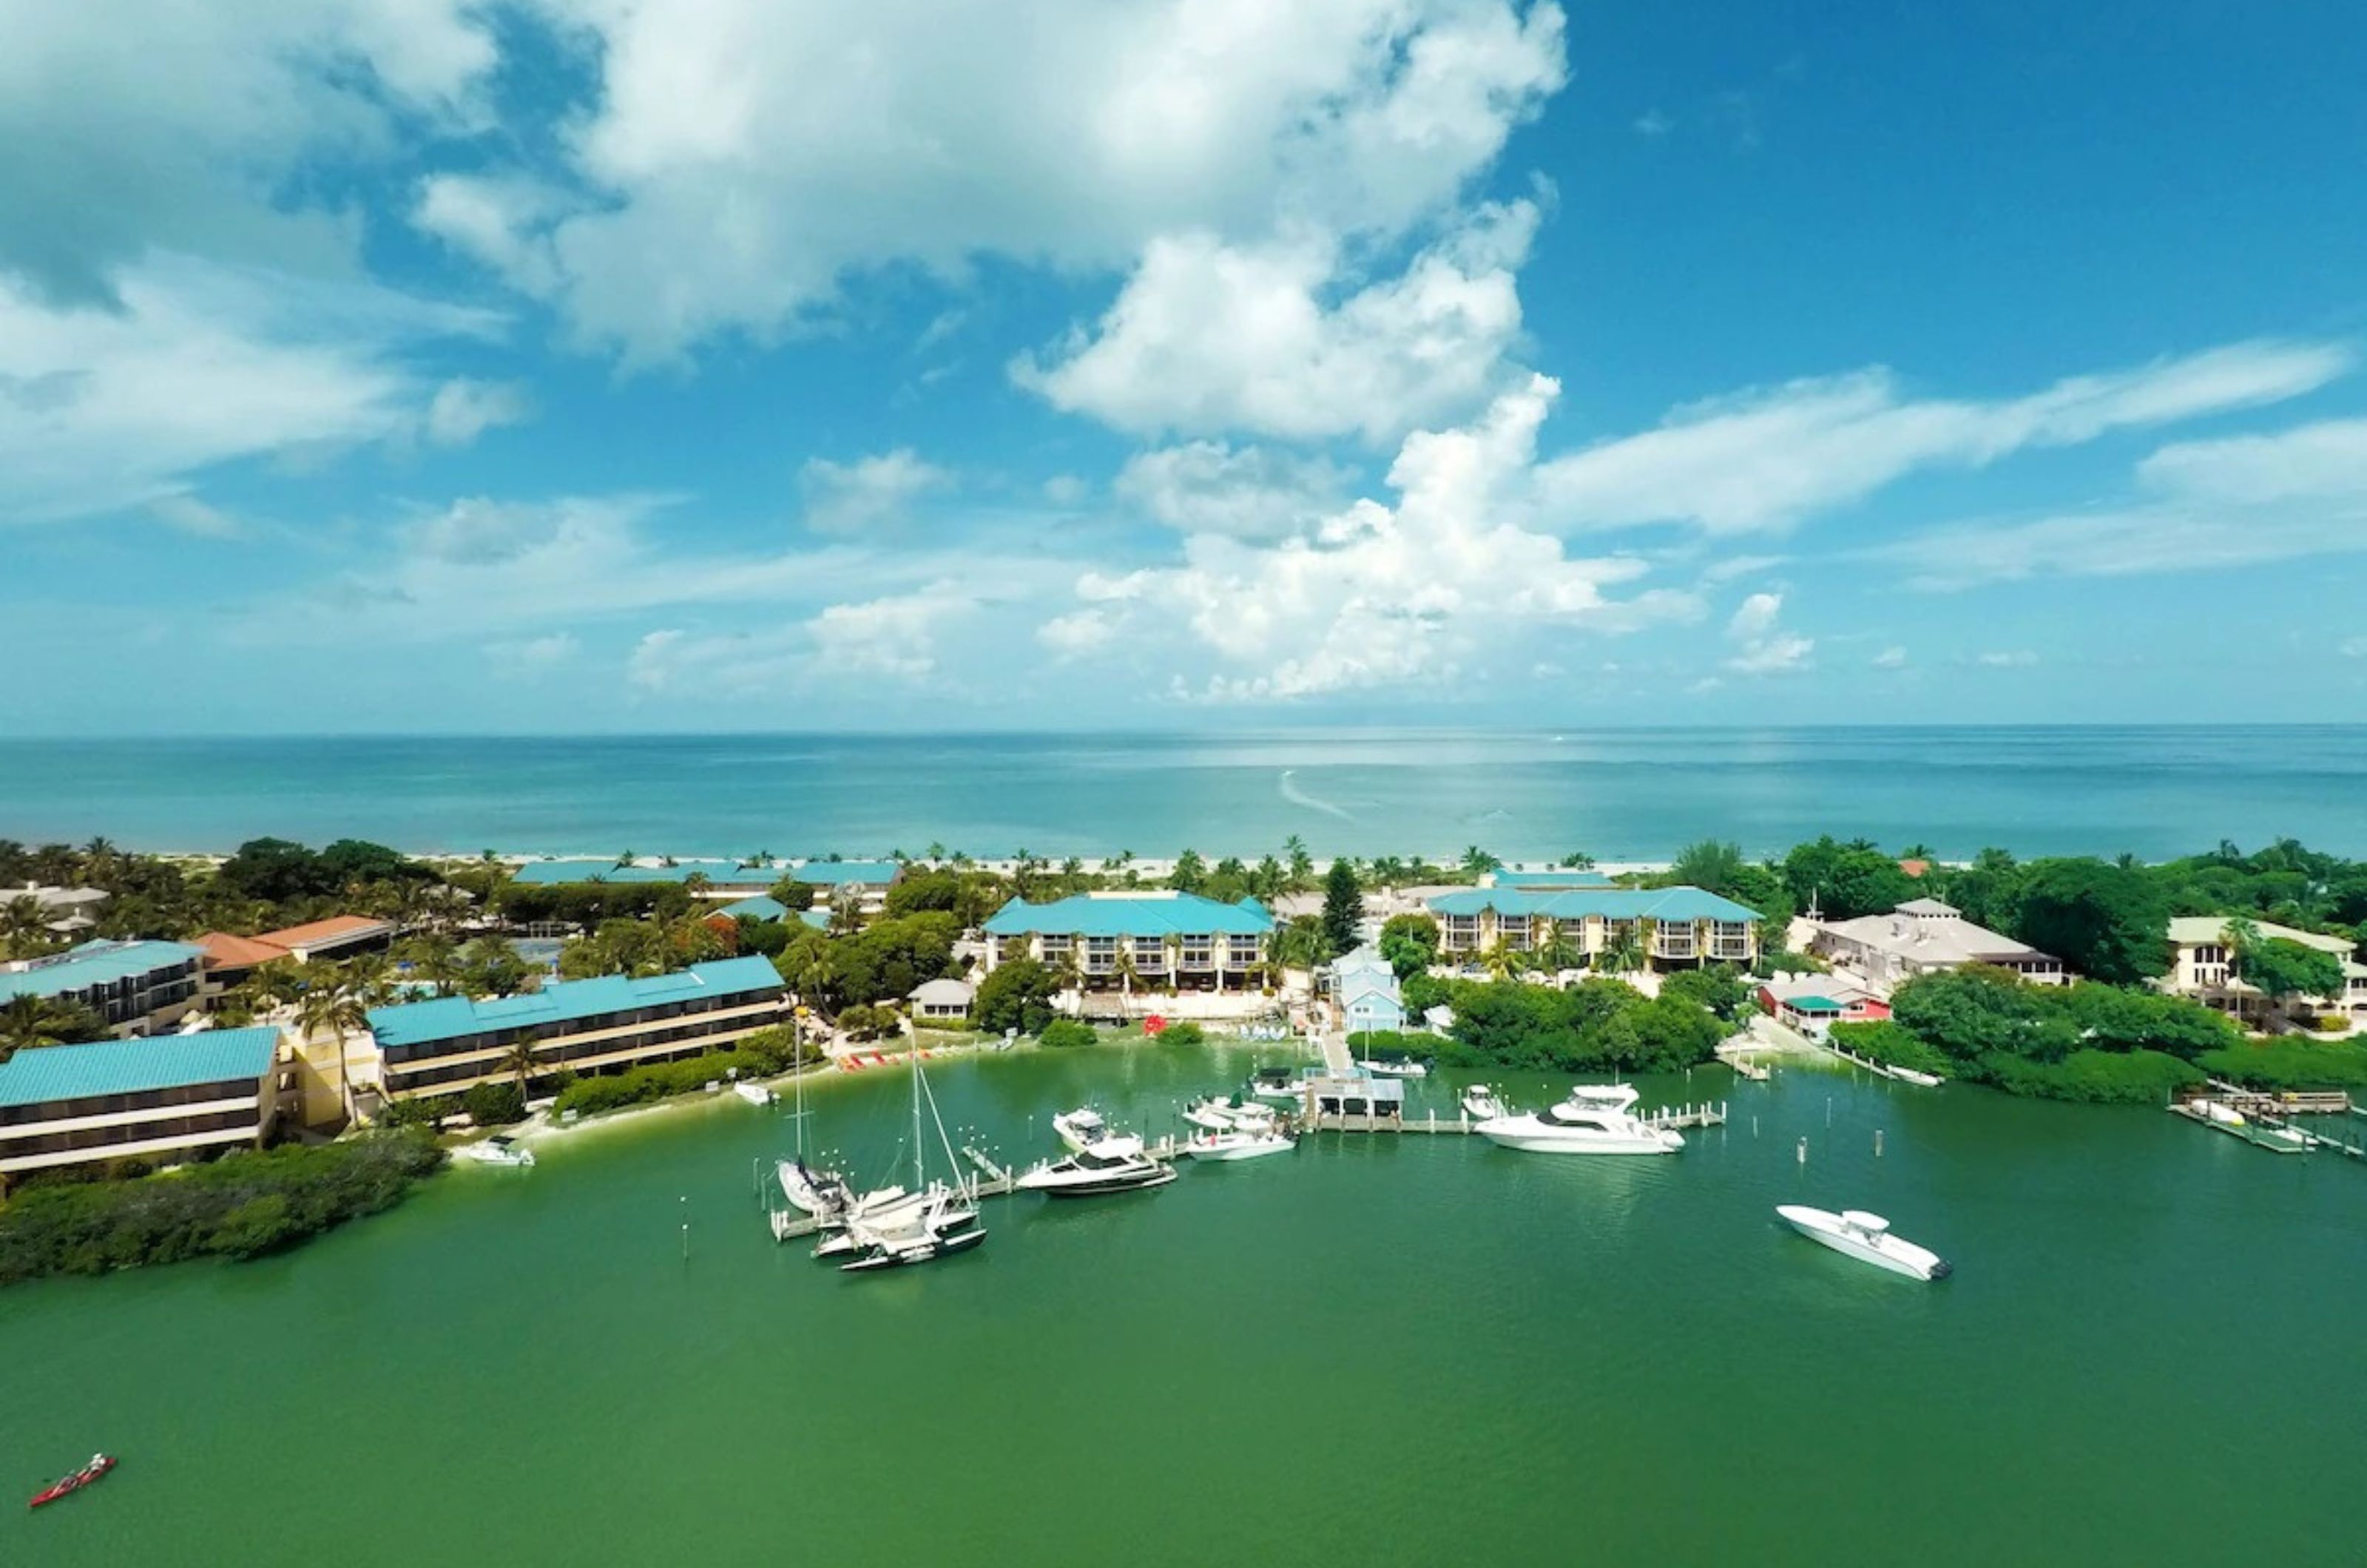 Tween Waters Inn Island Resort - https://www.beachguide.com/sanibel-captiva-vacation-rentals-tween-waters-inn-island-resort--1779-0-20242-2311.jpg?width=185&height=185